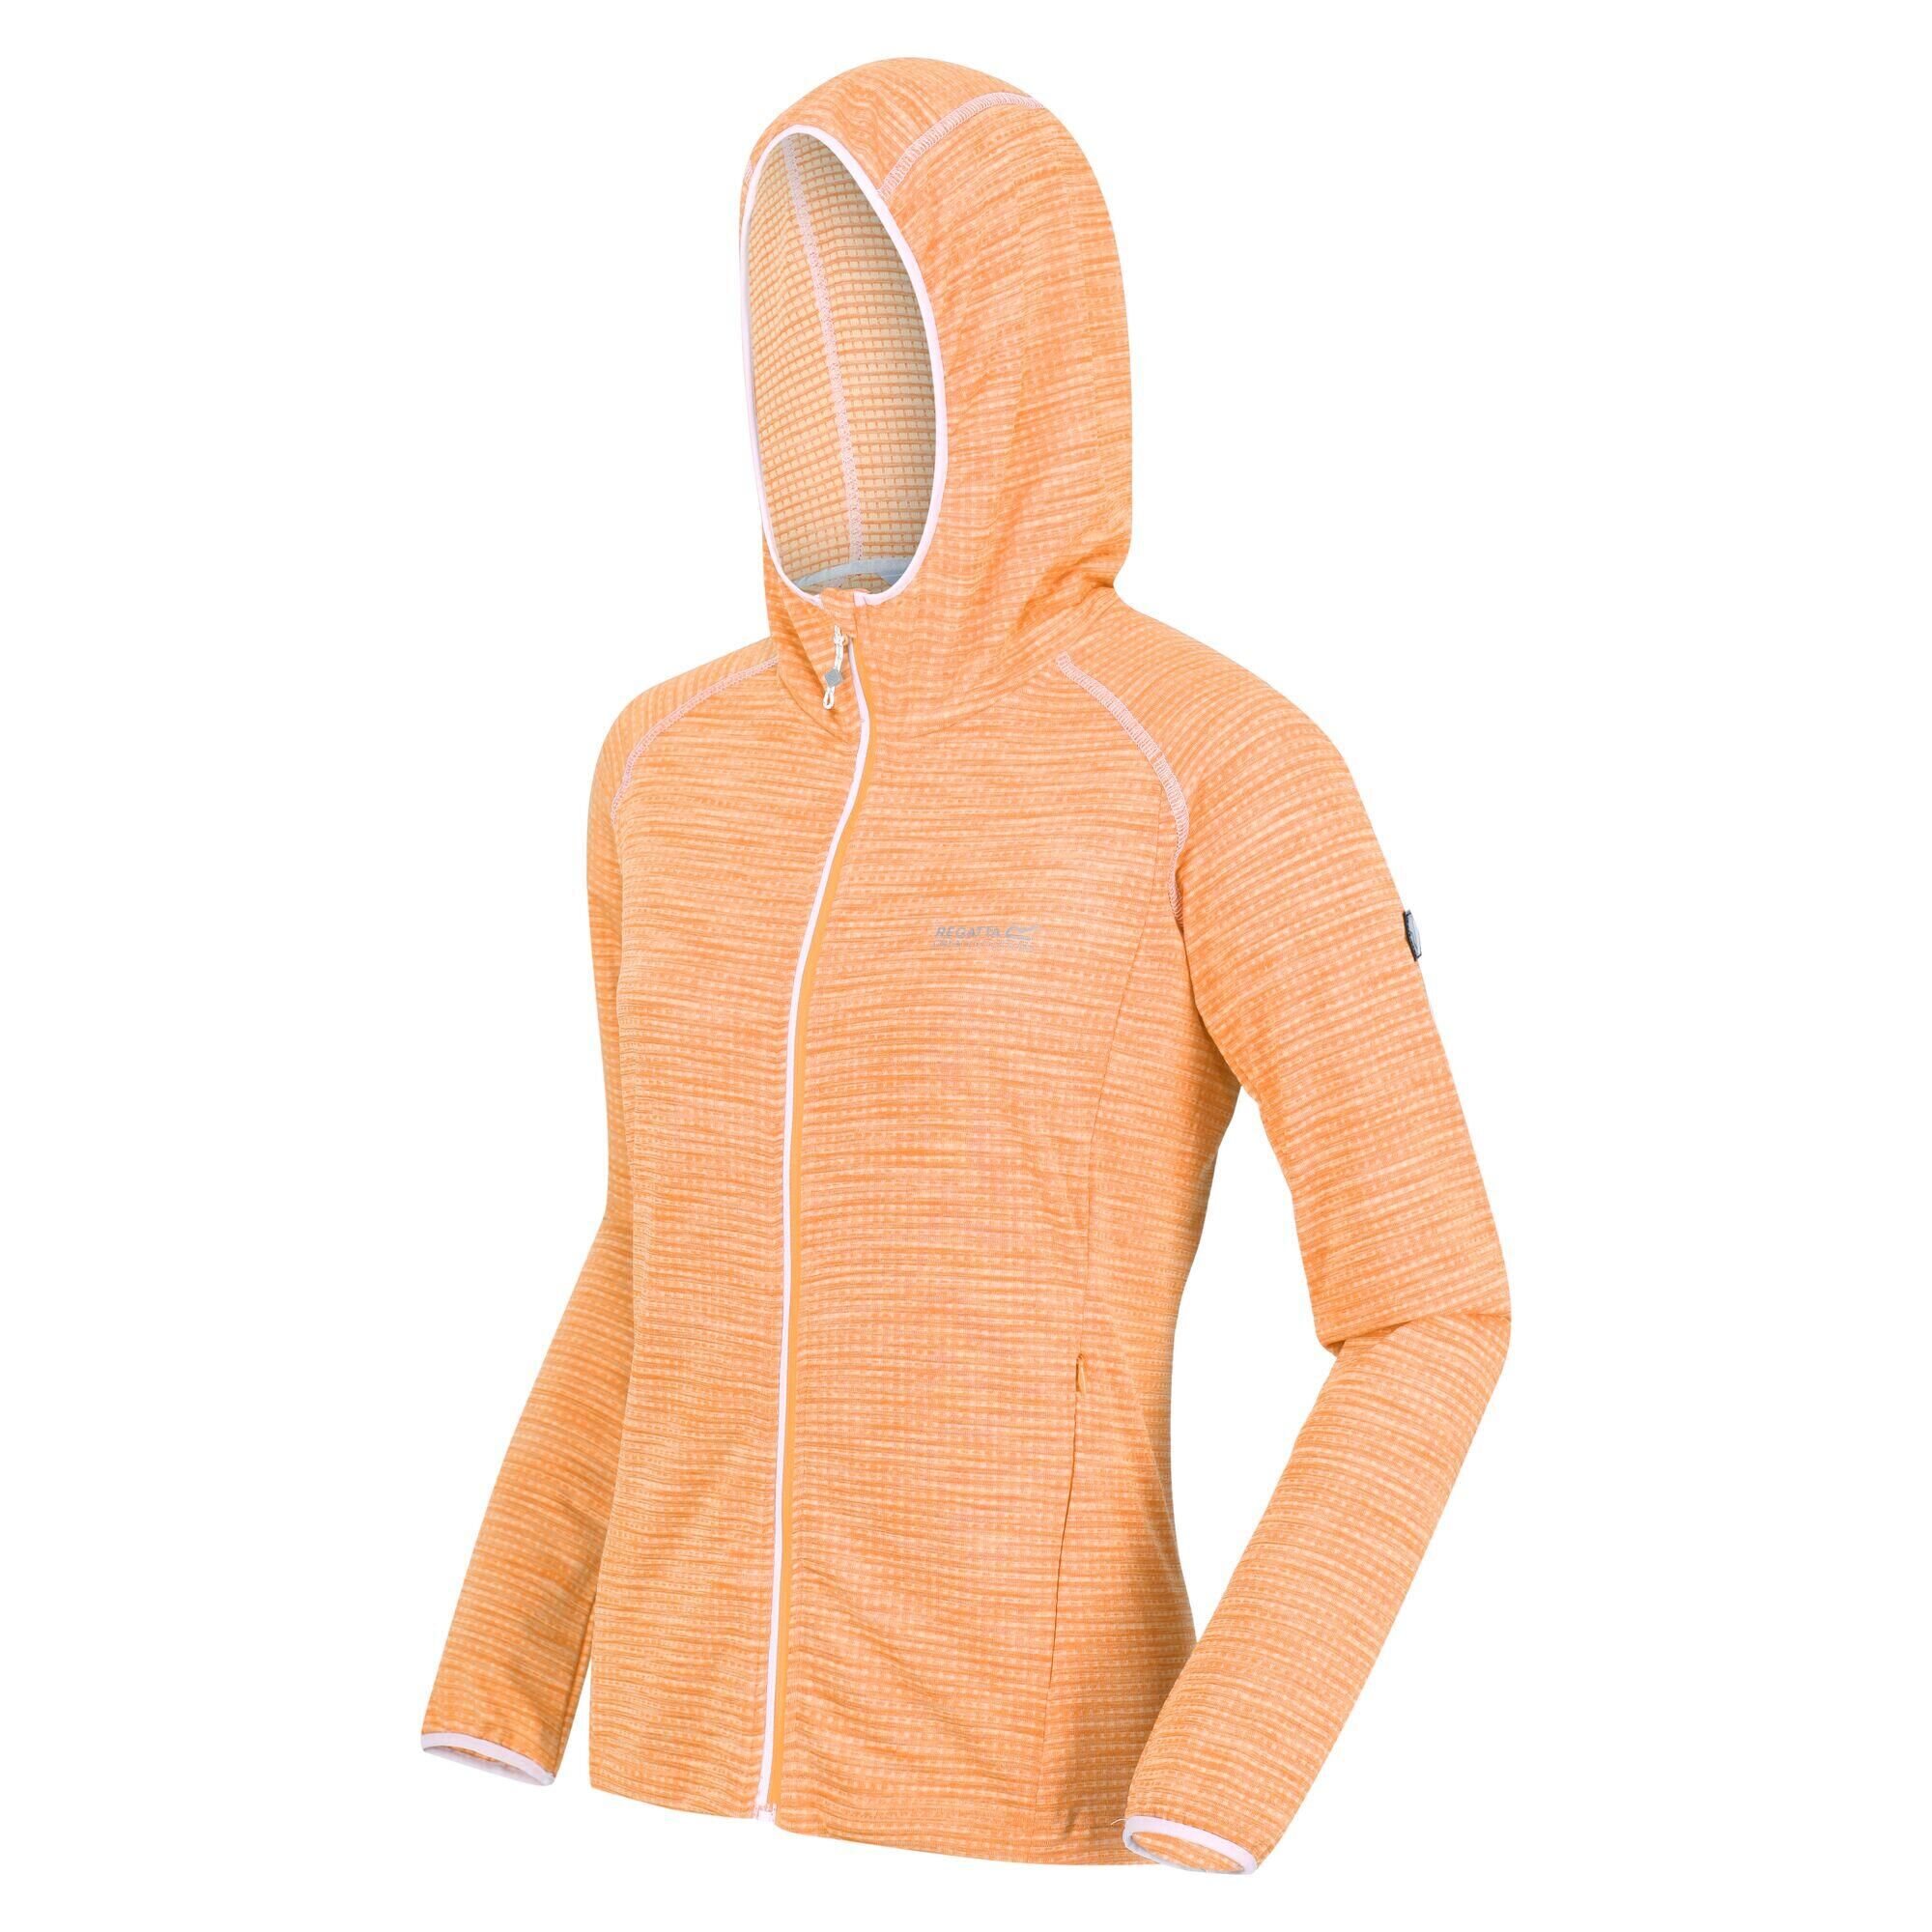 REGATTA Yonder Women's Hiking Full Zip Hoodie - Papaya Orange